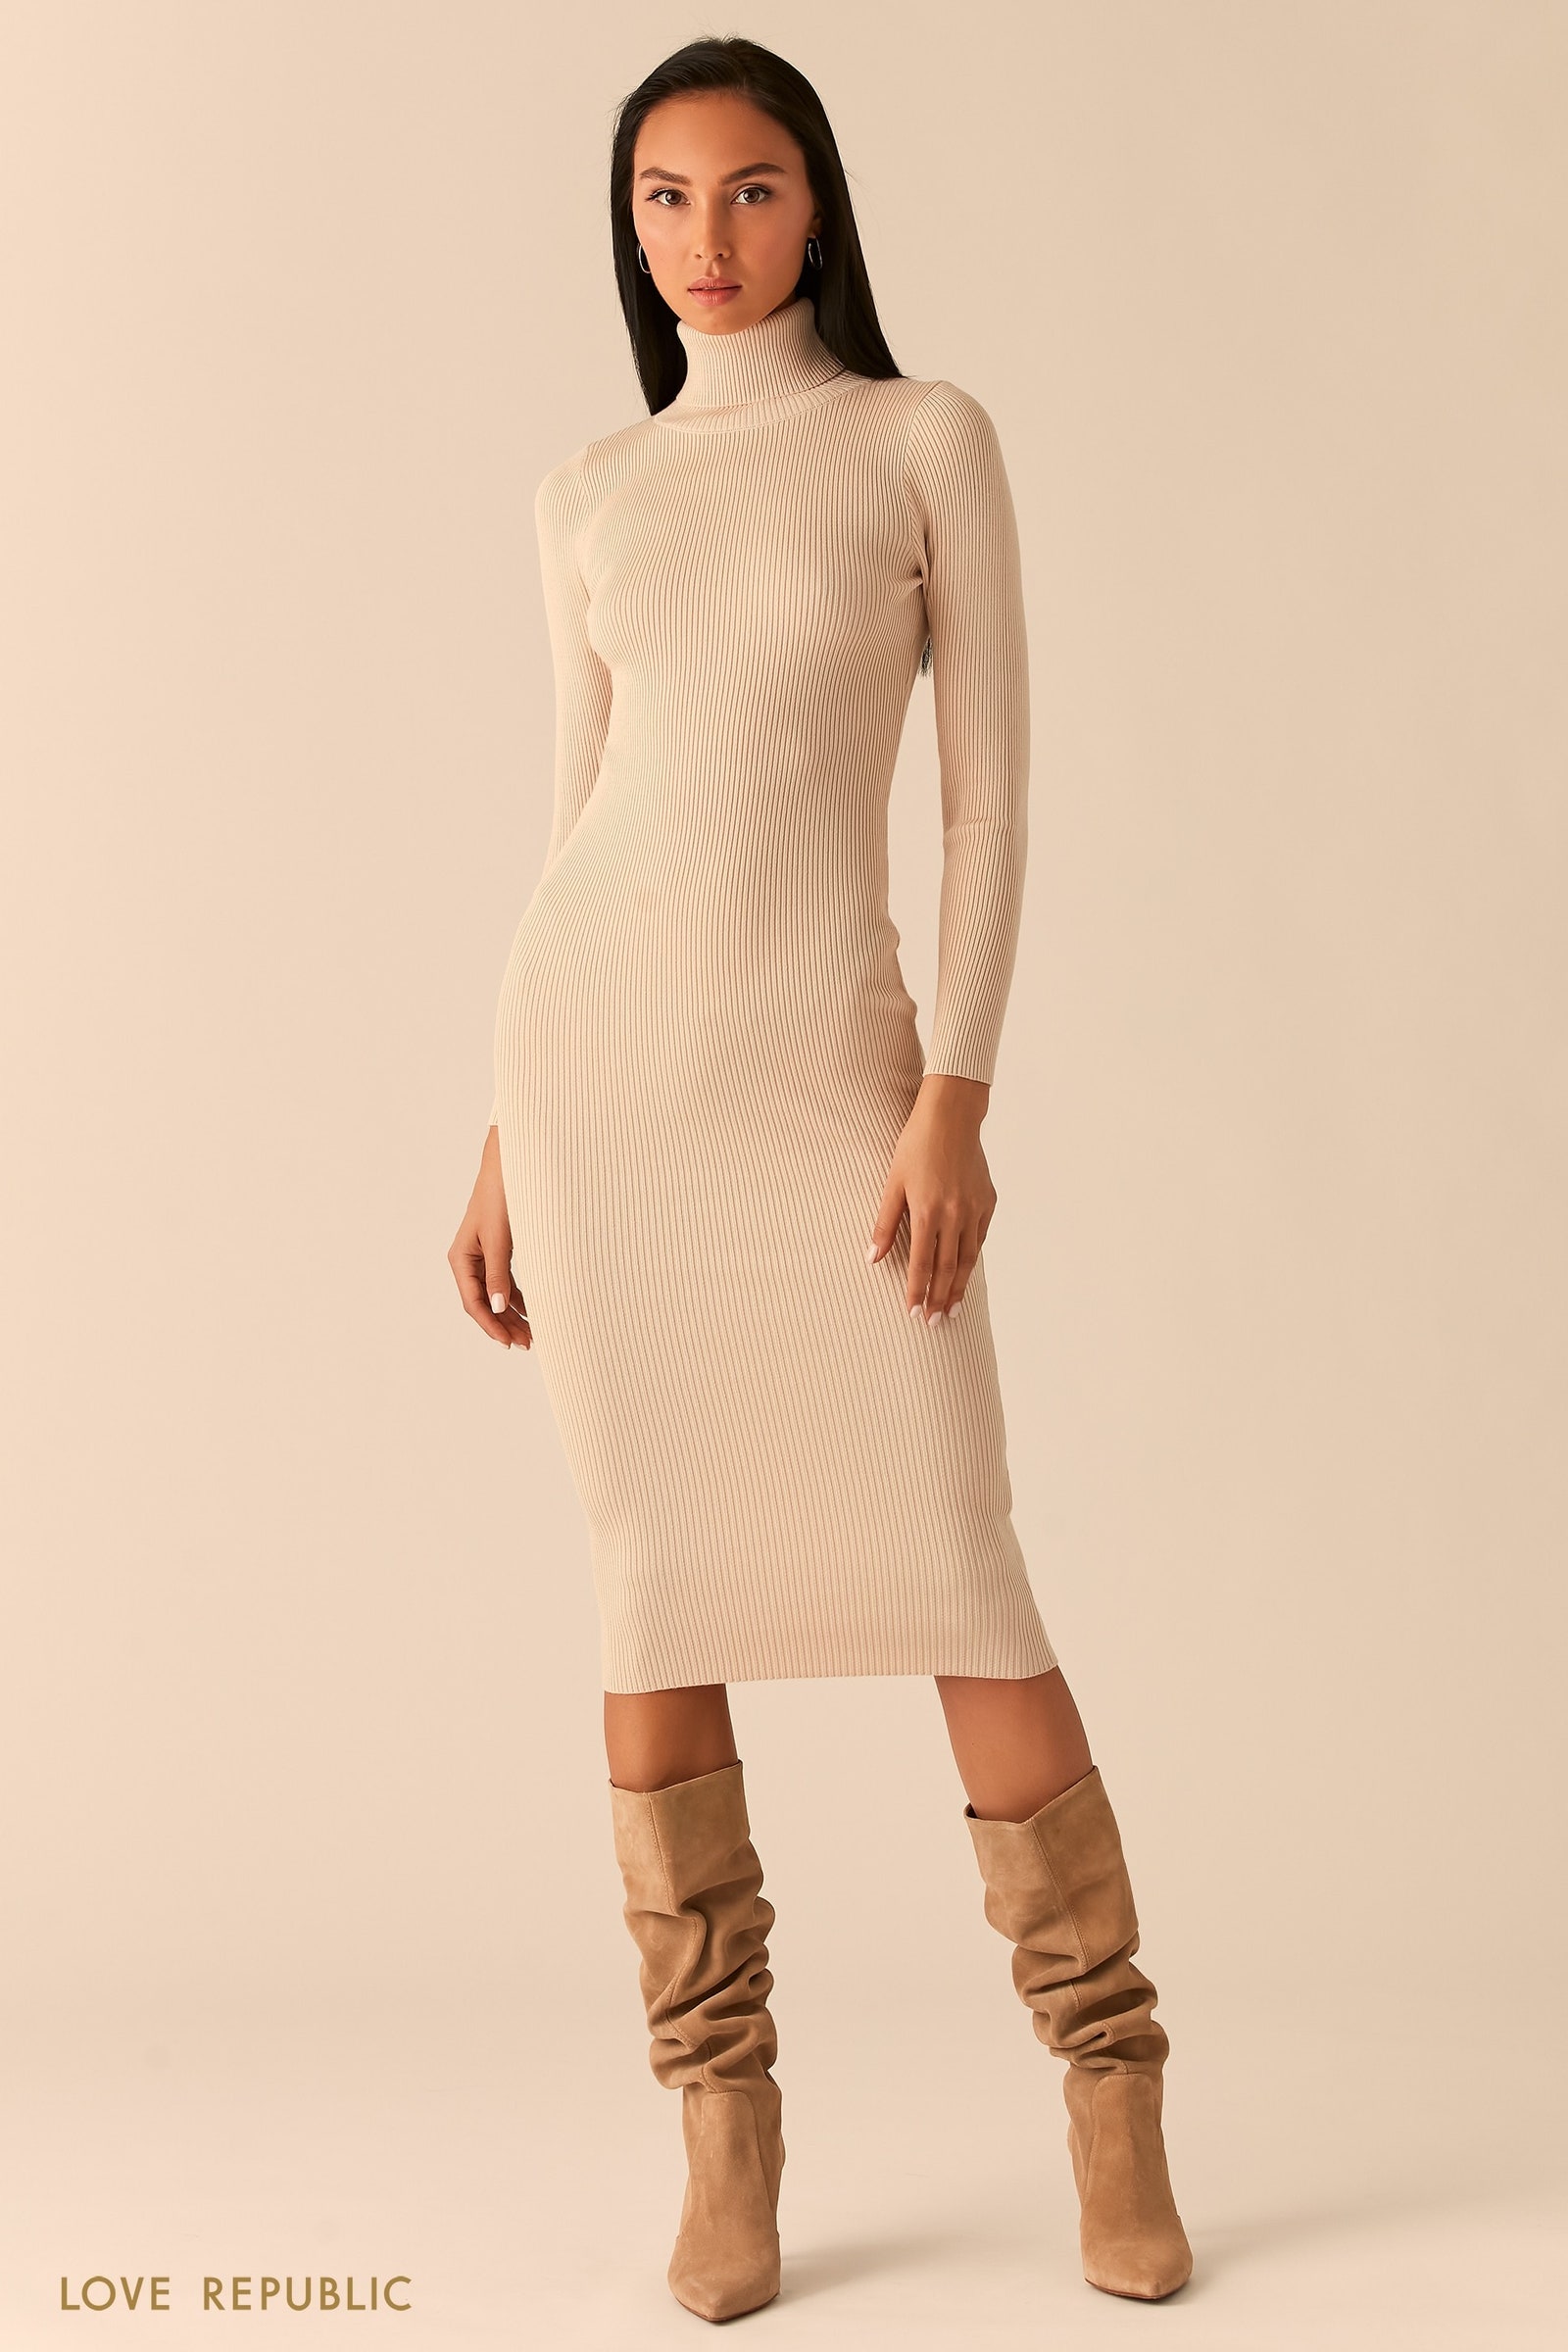 Трикотажные платья самые красивые базовые модели для зимы